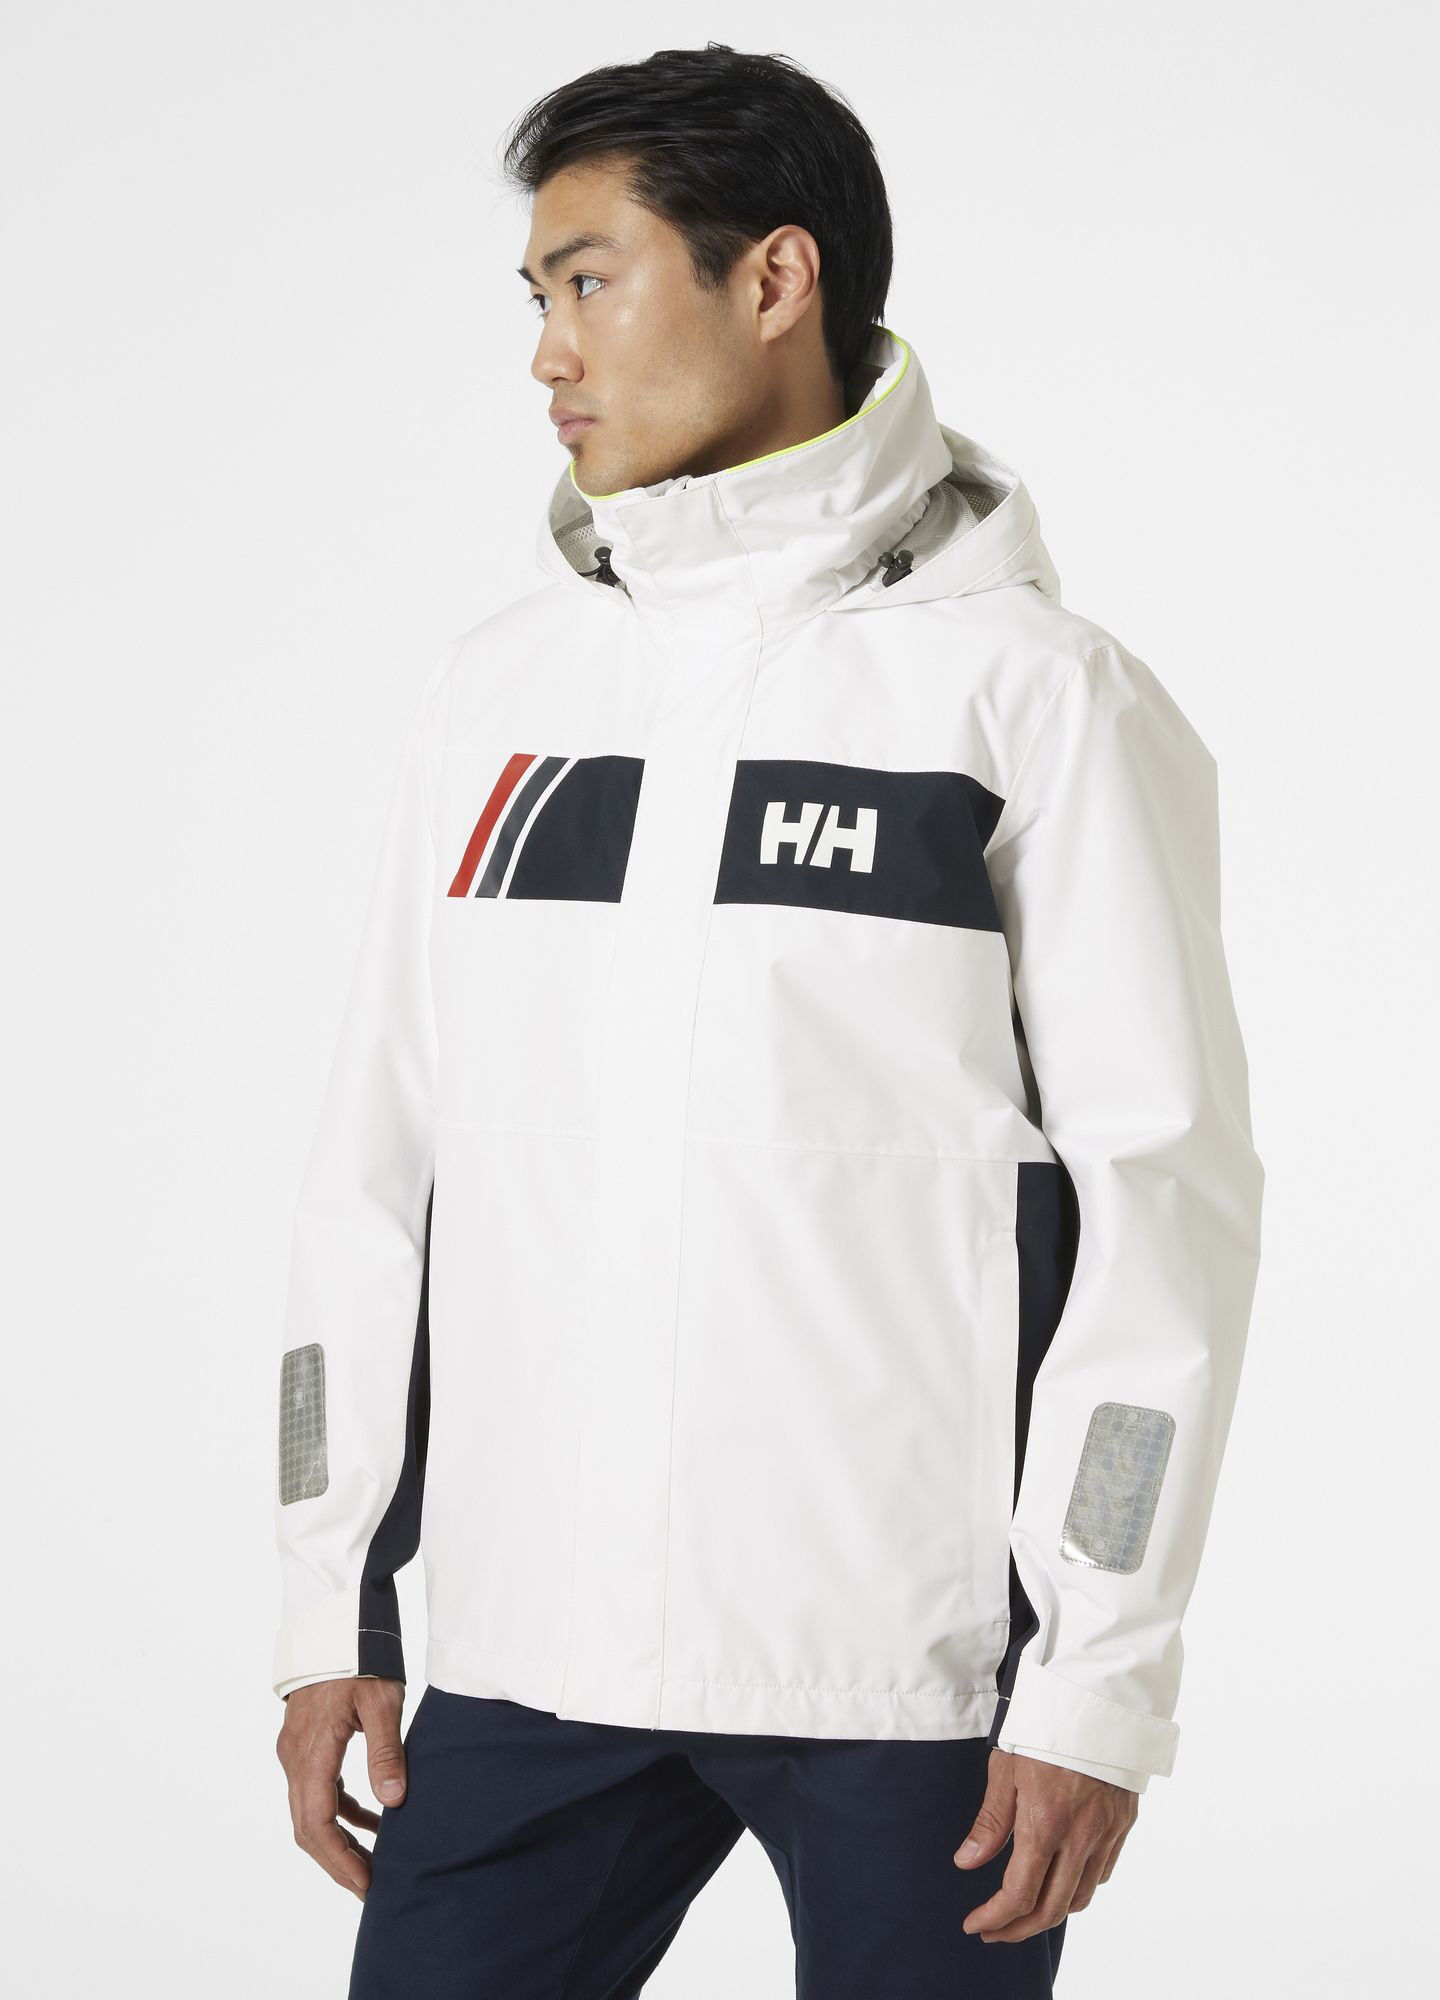 Helly Hansen Newport Inshore Jacket - Chaqueta náutica - Hombre | Hardloop